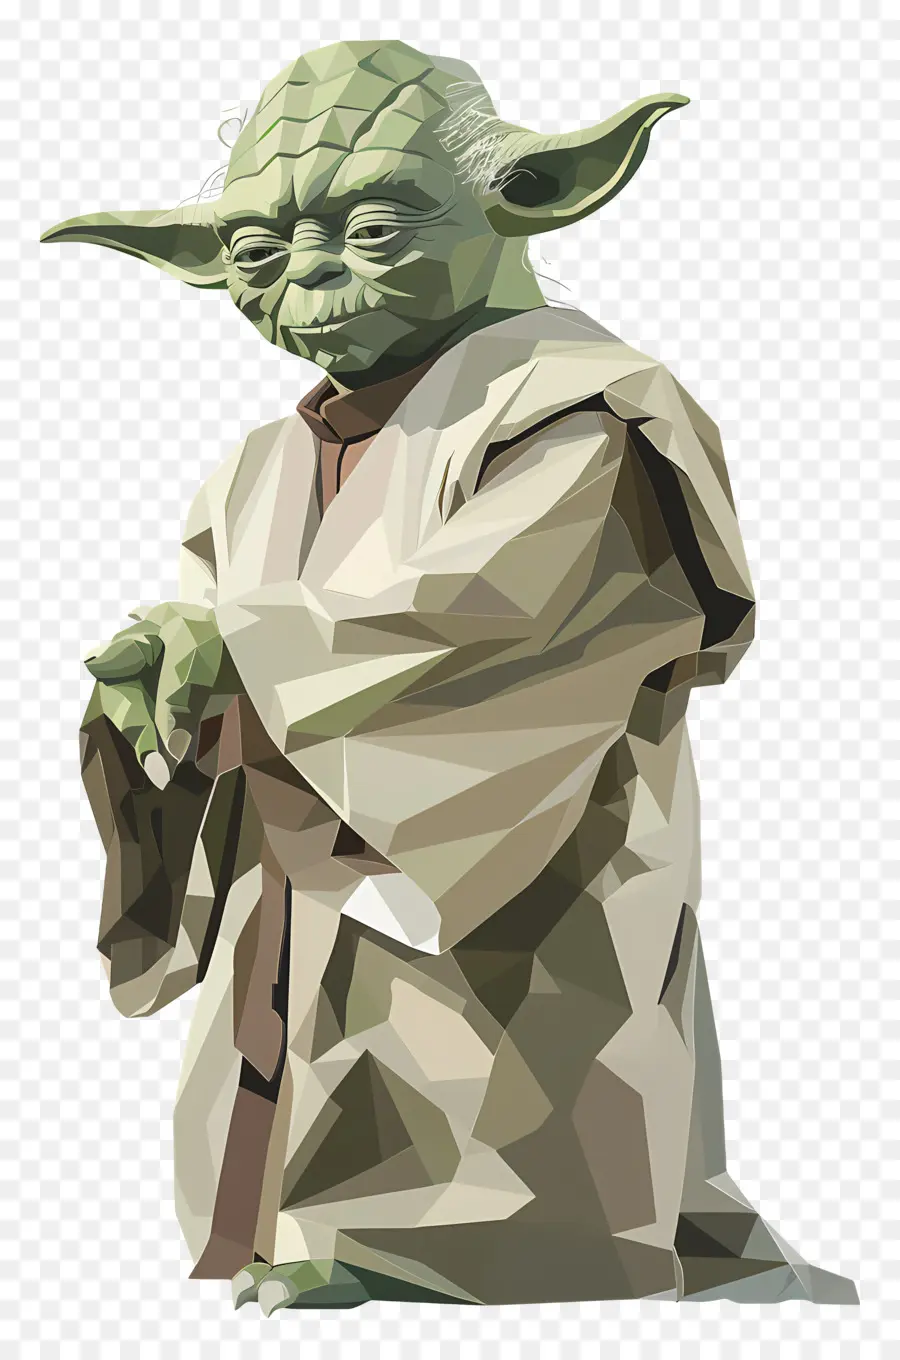 chiến tranh giữa các vì sao - Nhân vật Yoda theo phong cách truyền thống, nhượng quyền Star Wars